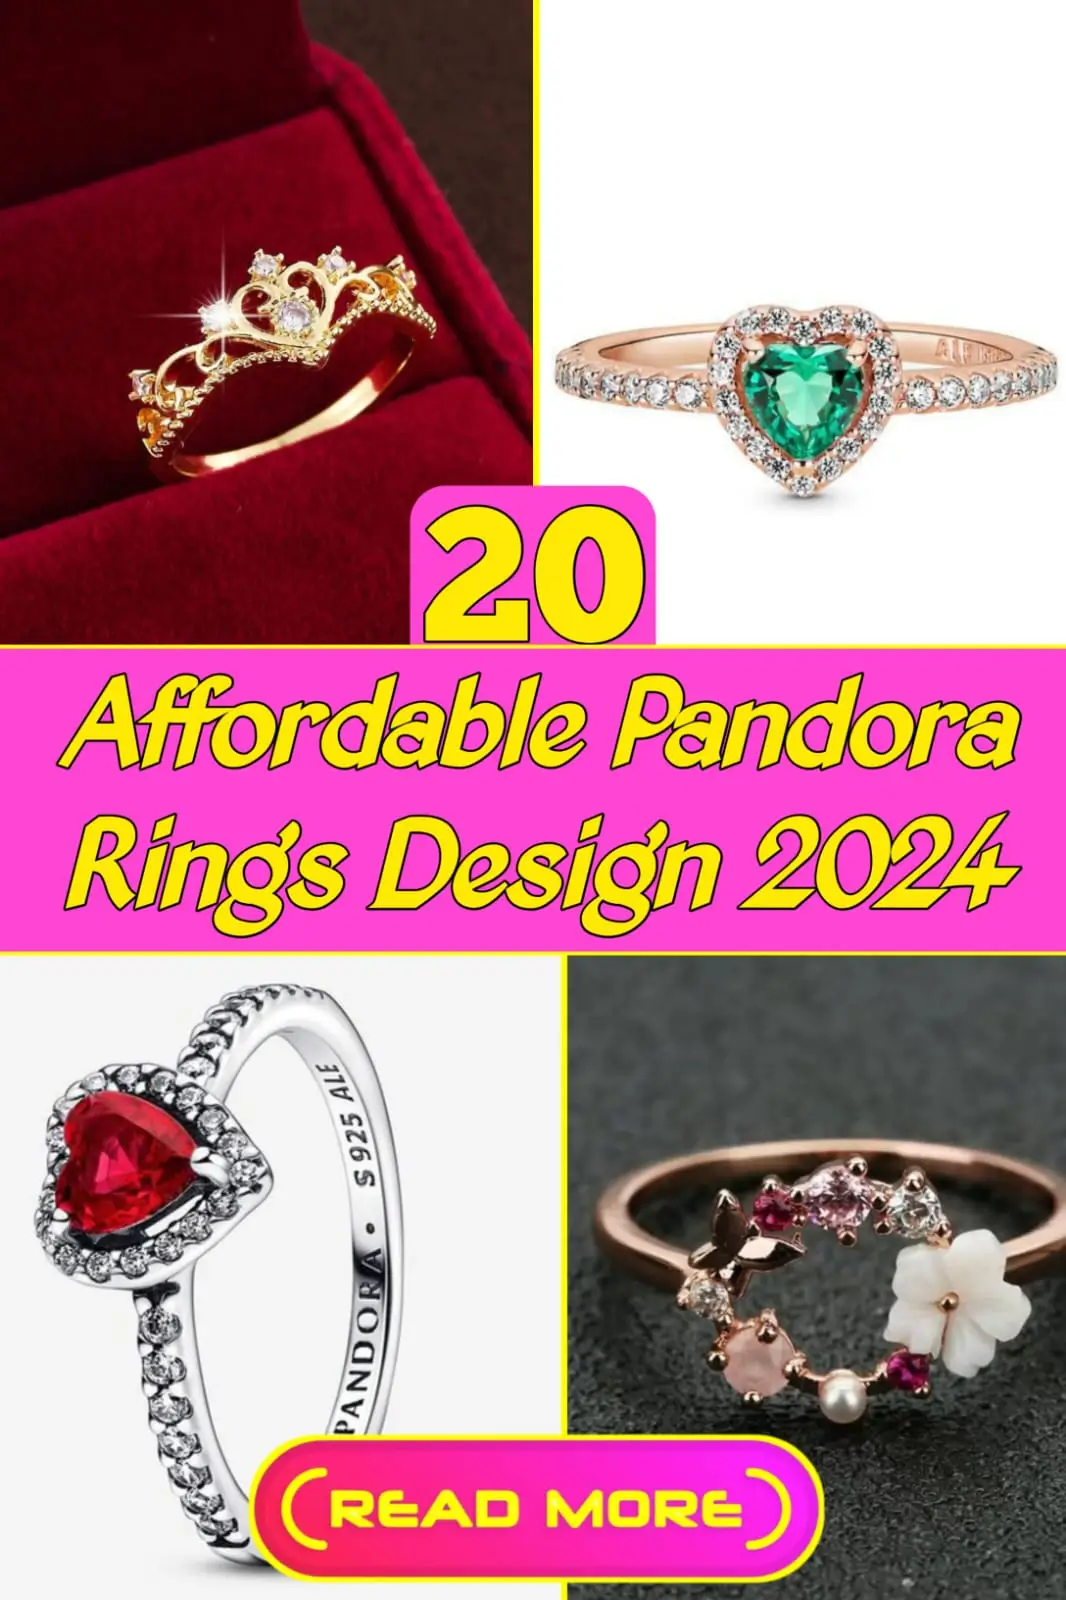 Pandora Rings Design 2024